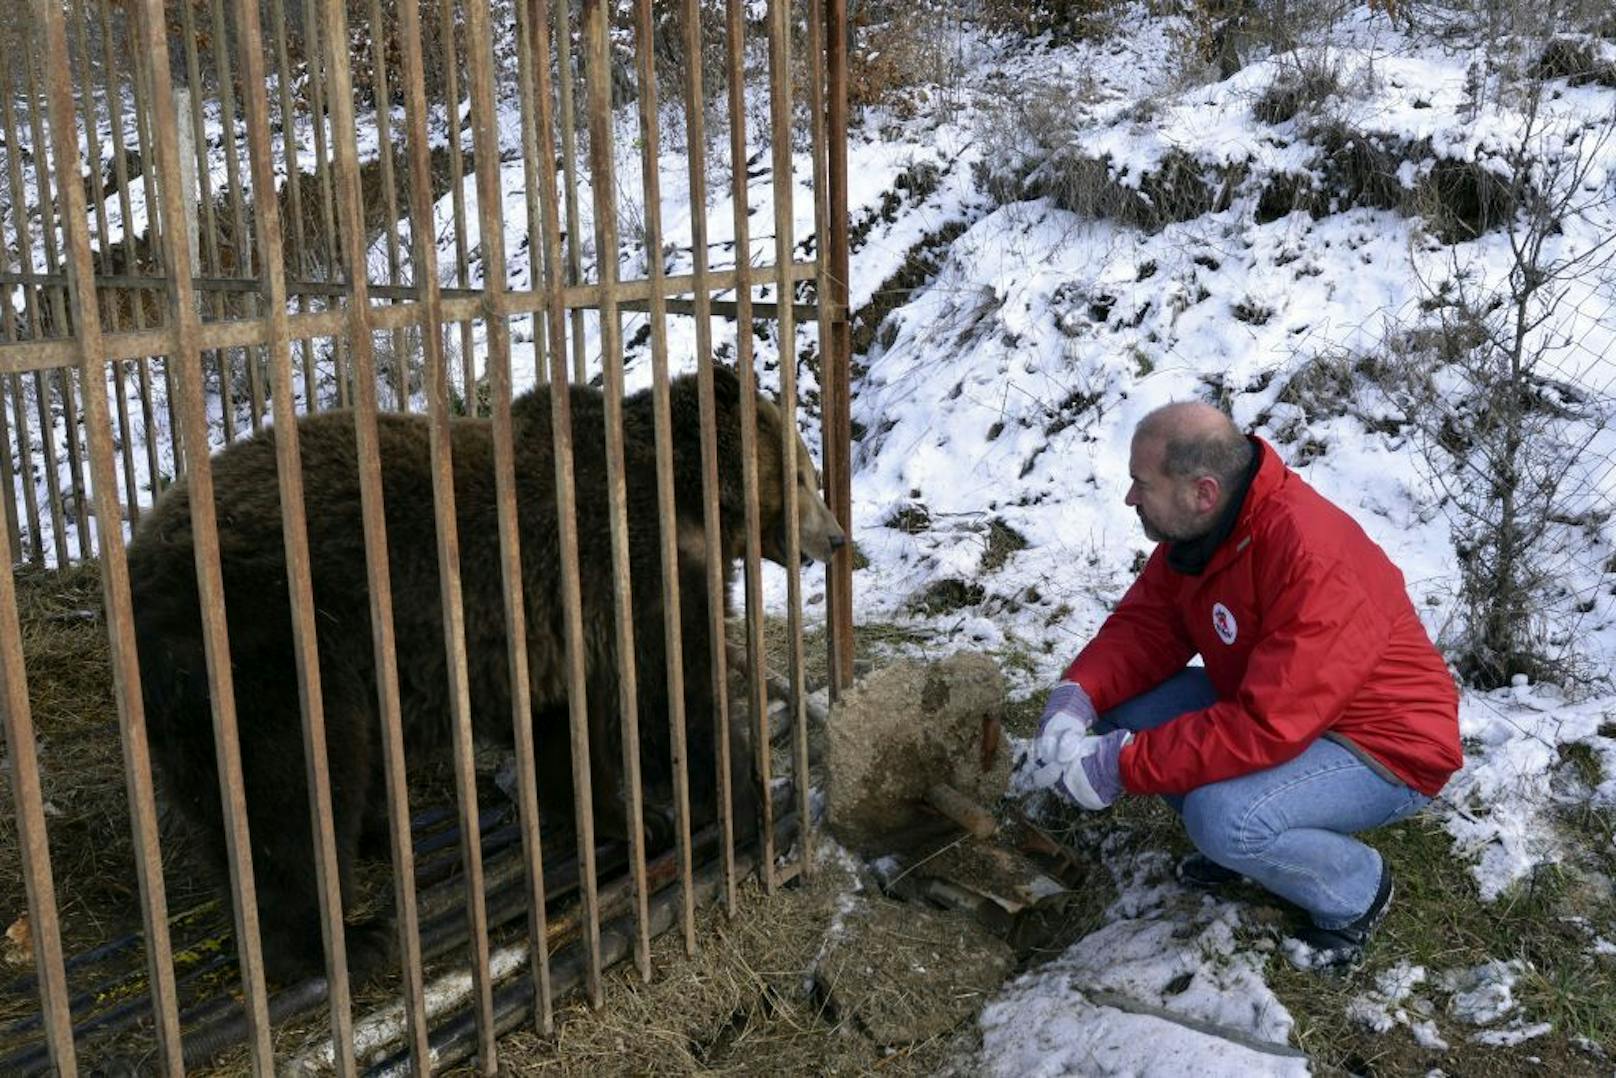 VIER PFOTEN gründete den Bärenwald um sog. "Restaurantbären" von den grausamen Haltungsbedingungen zu befreien und ihnen ein artgerechtes zu Hause zu schaffen.